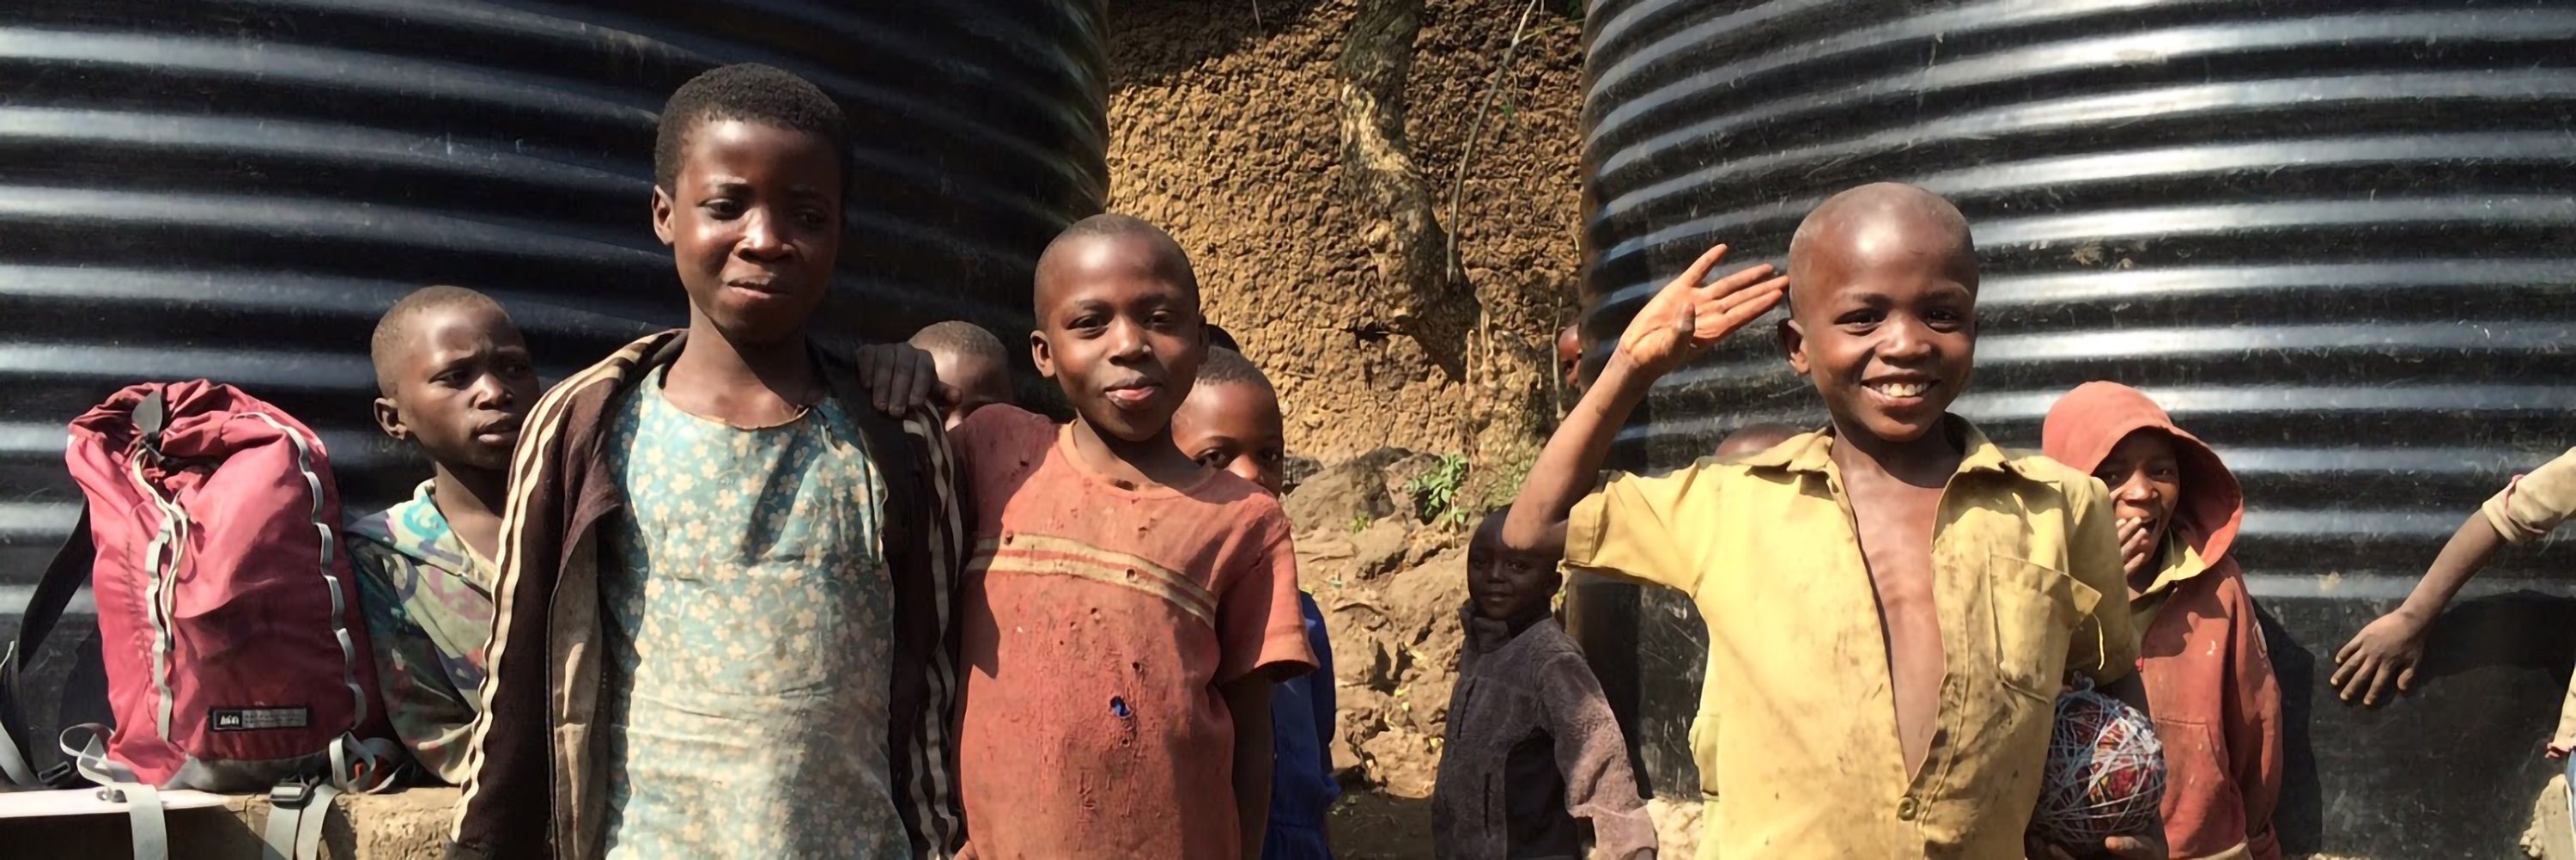 Rwanda Rainwater Catchment System and children